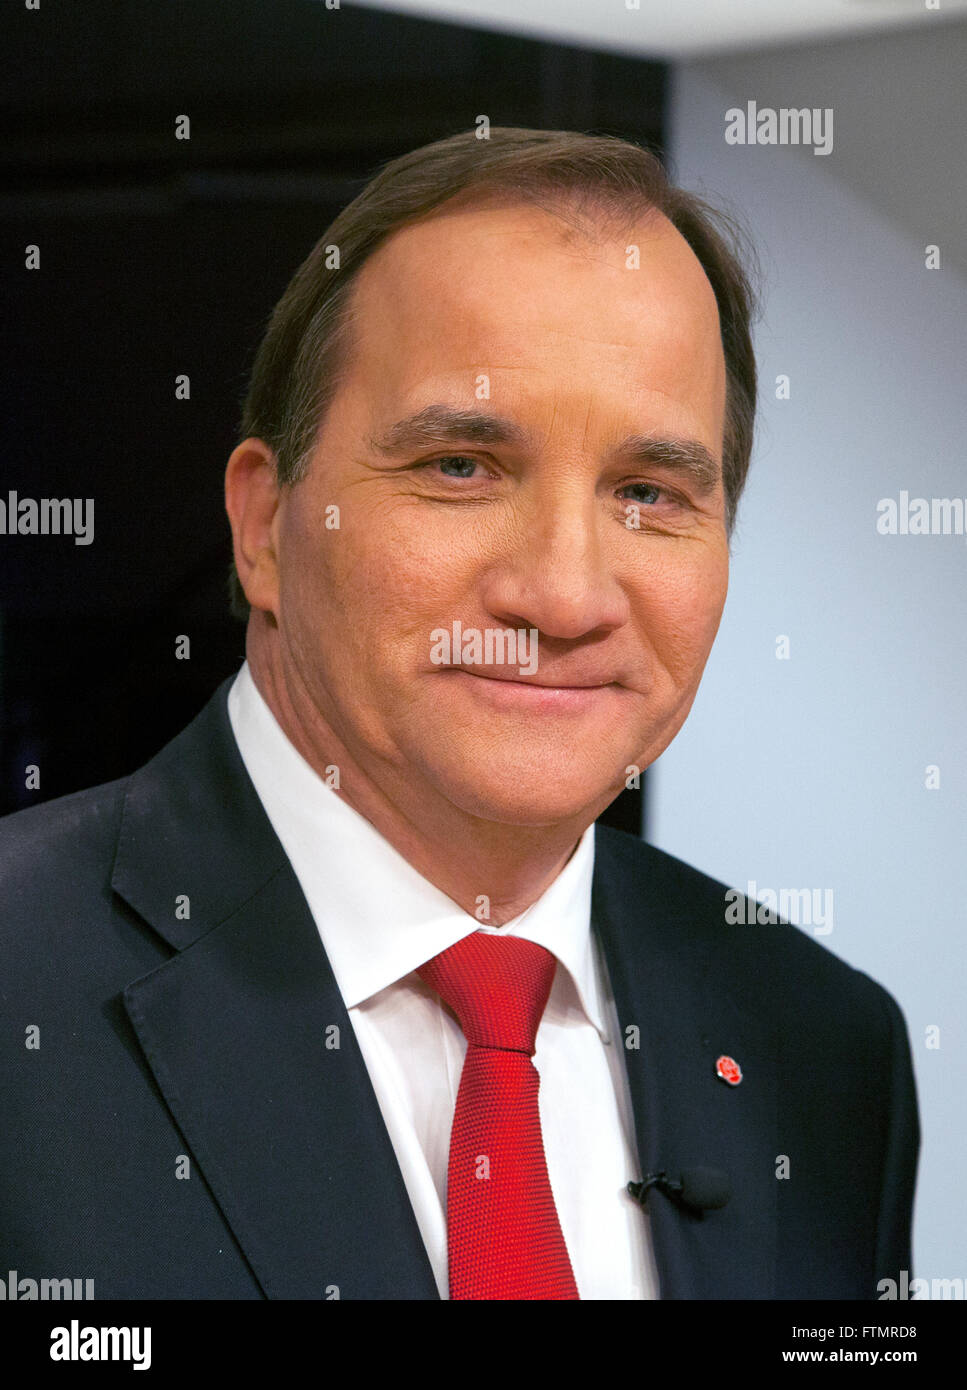 STEFAN LÖFVÉN dirigente de los Socialdemócratas y el Primer Ministro sueco Foto de stock